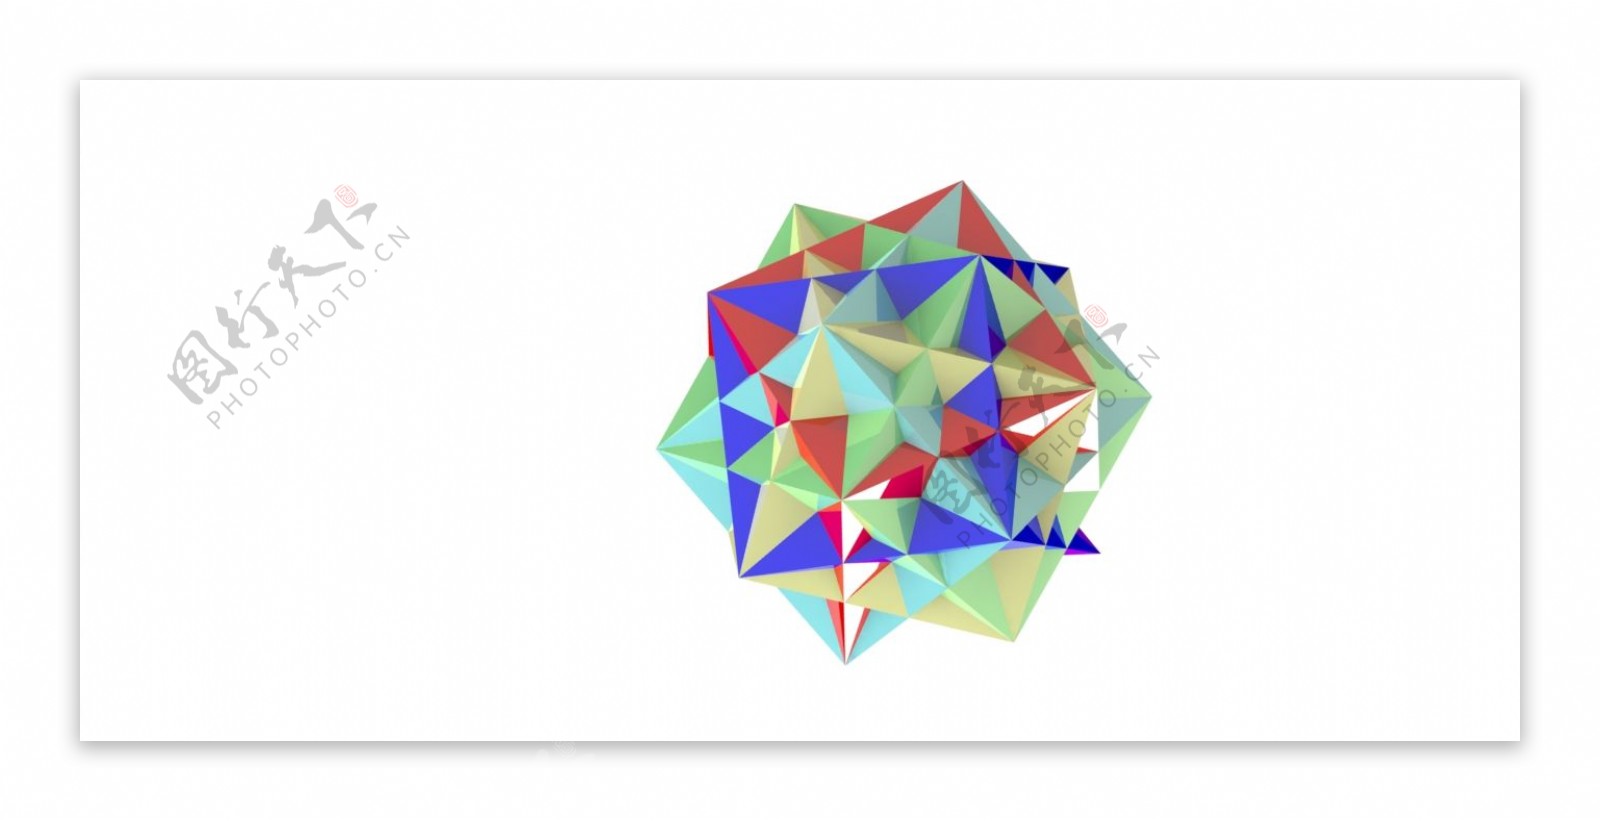 在一个十二面体的五个立方体